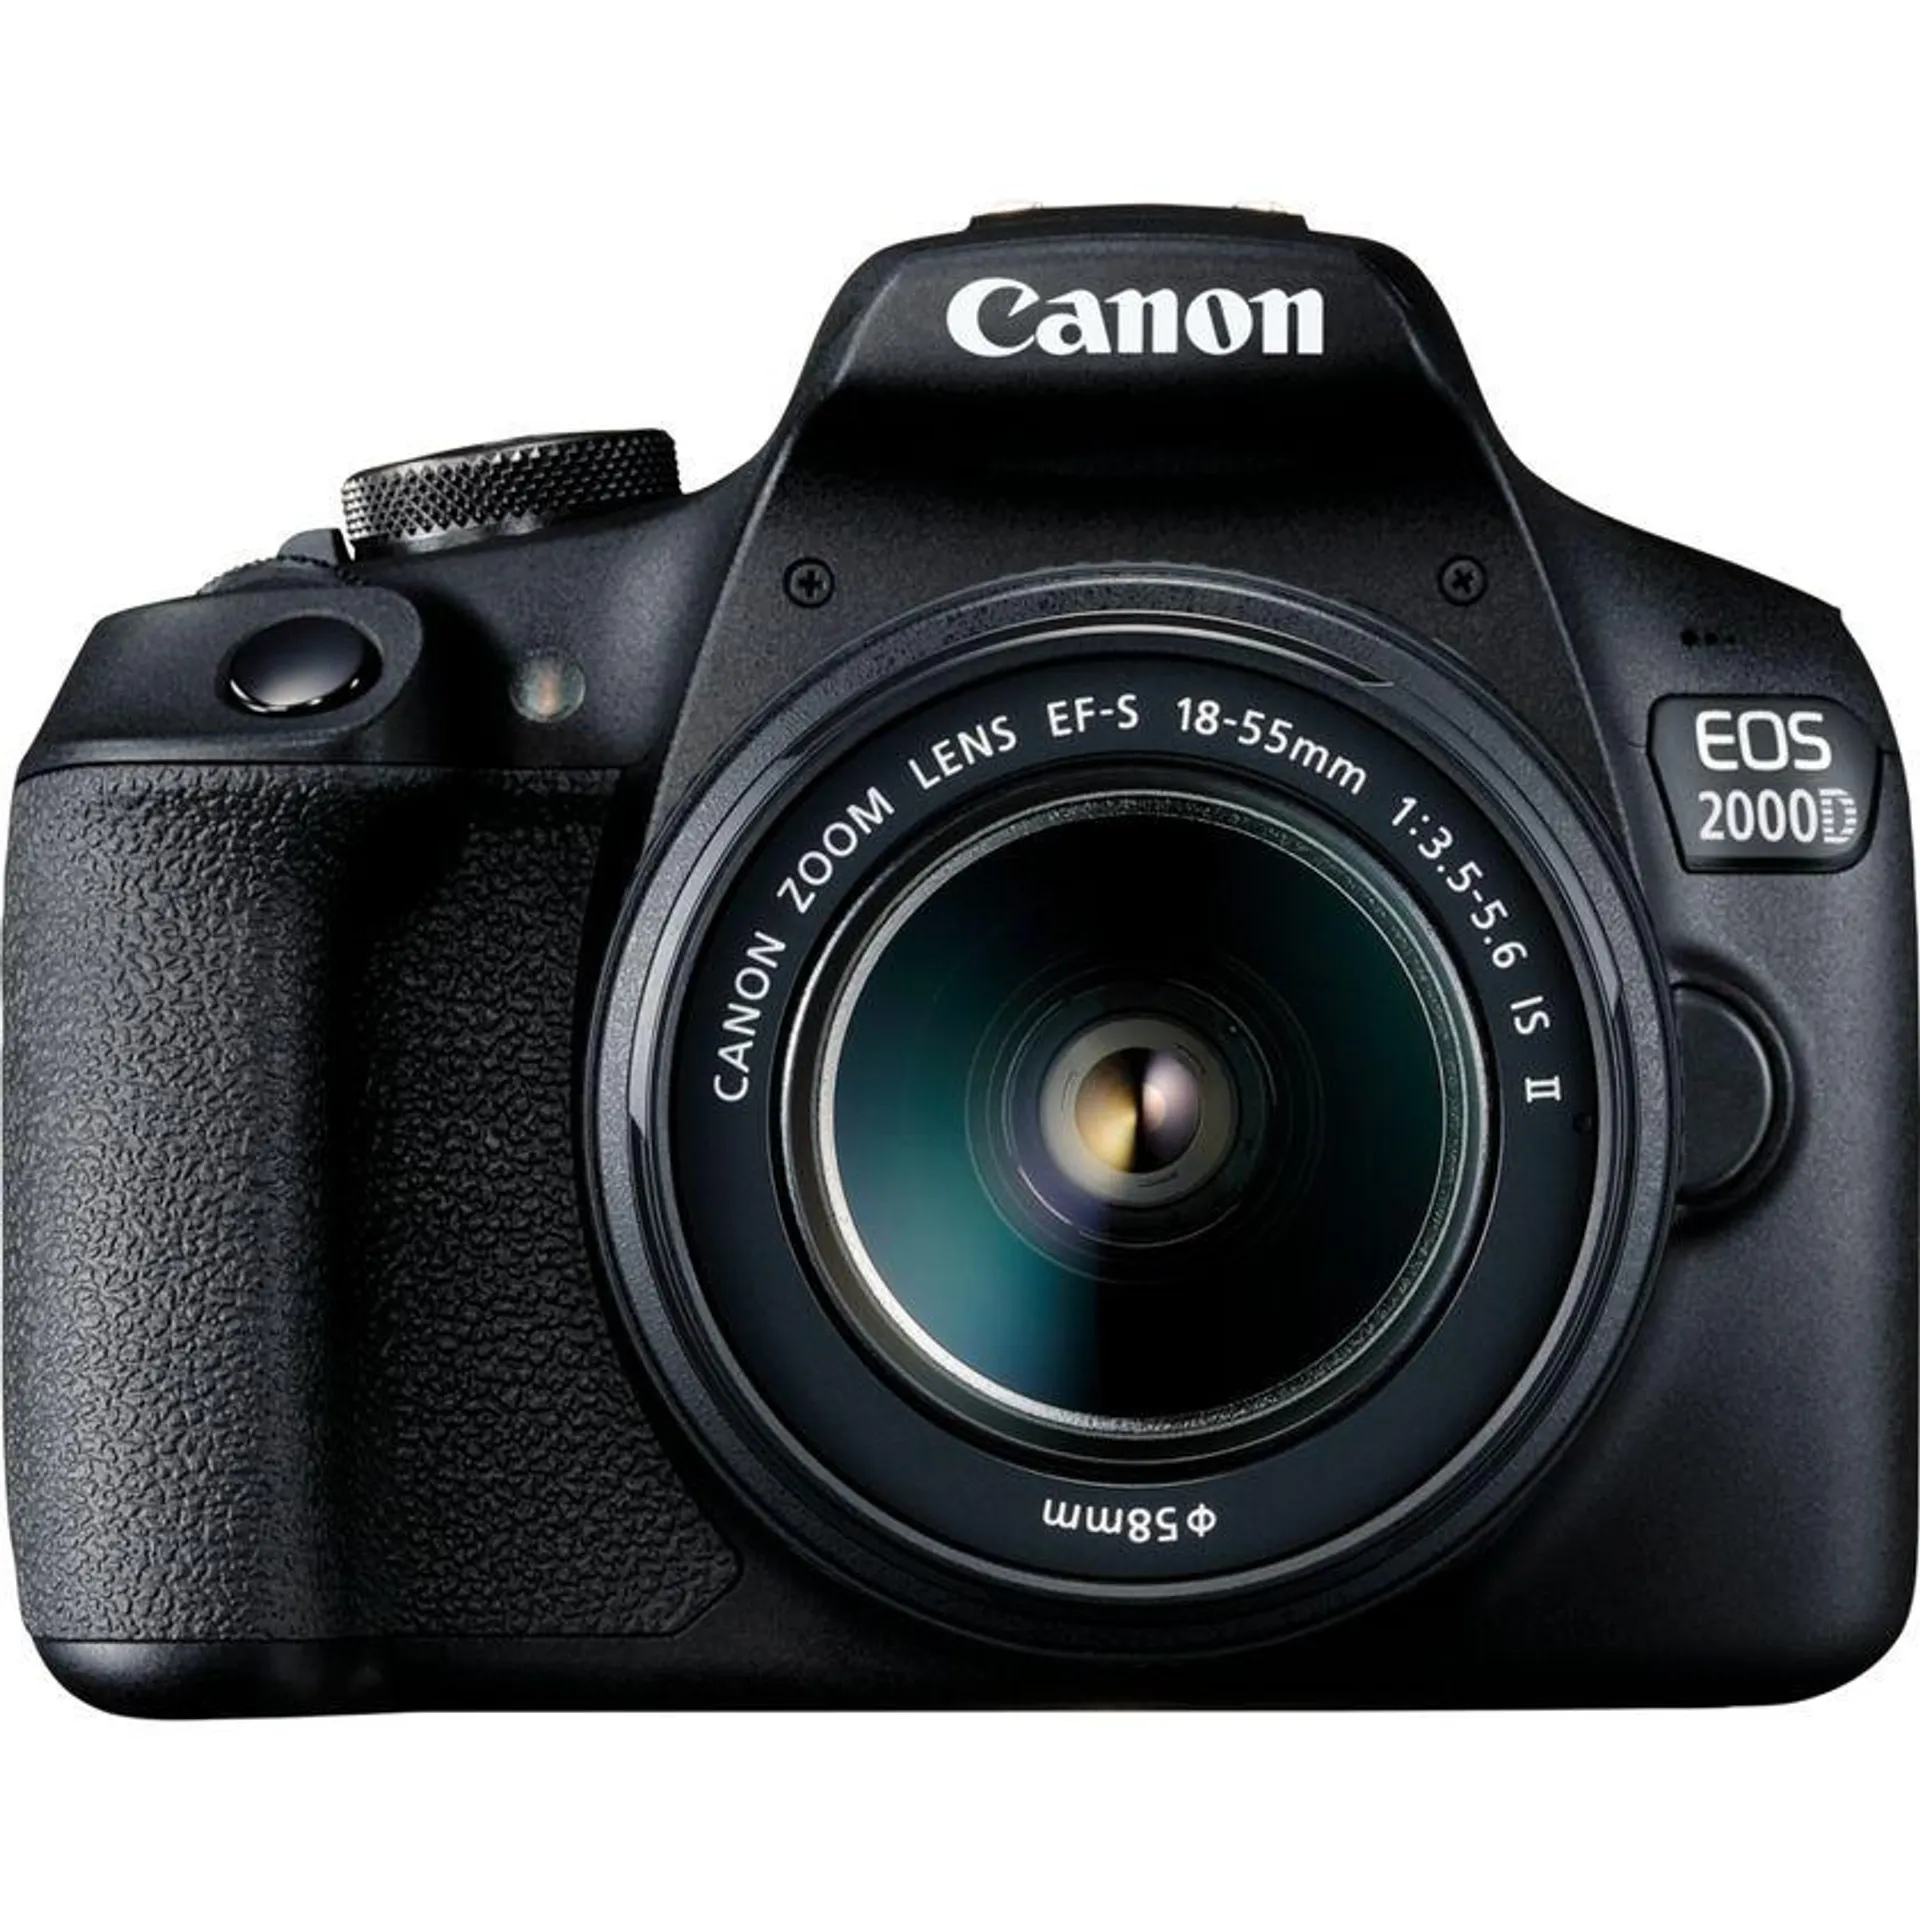 Cámara Canon EOS 2000D + objetivo EF-S 18-55mm IS II